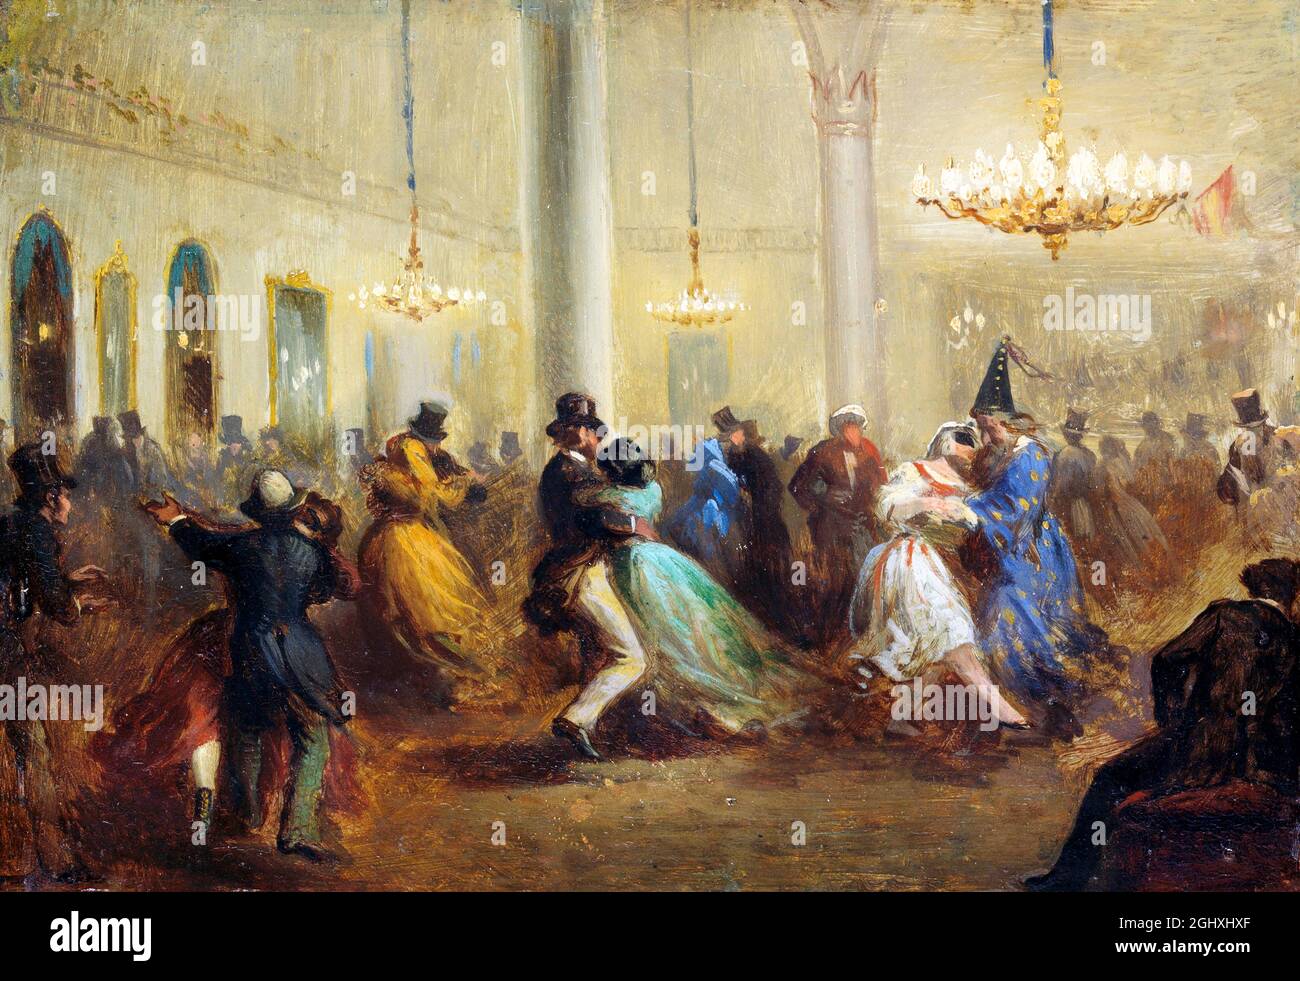 La Baile de Capellanes dell'artista spagnolo, Ricardo Balaca (1844-1880), olio su tinplate, c.. 1860-65 Foto Stock